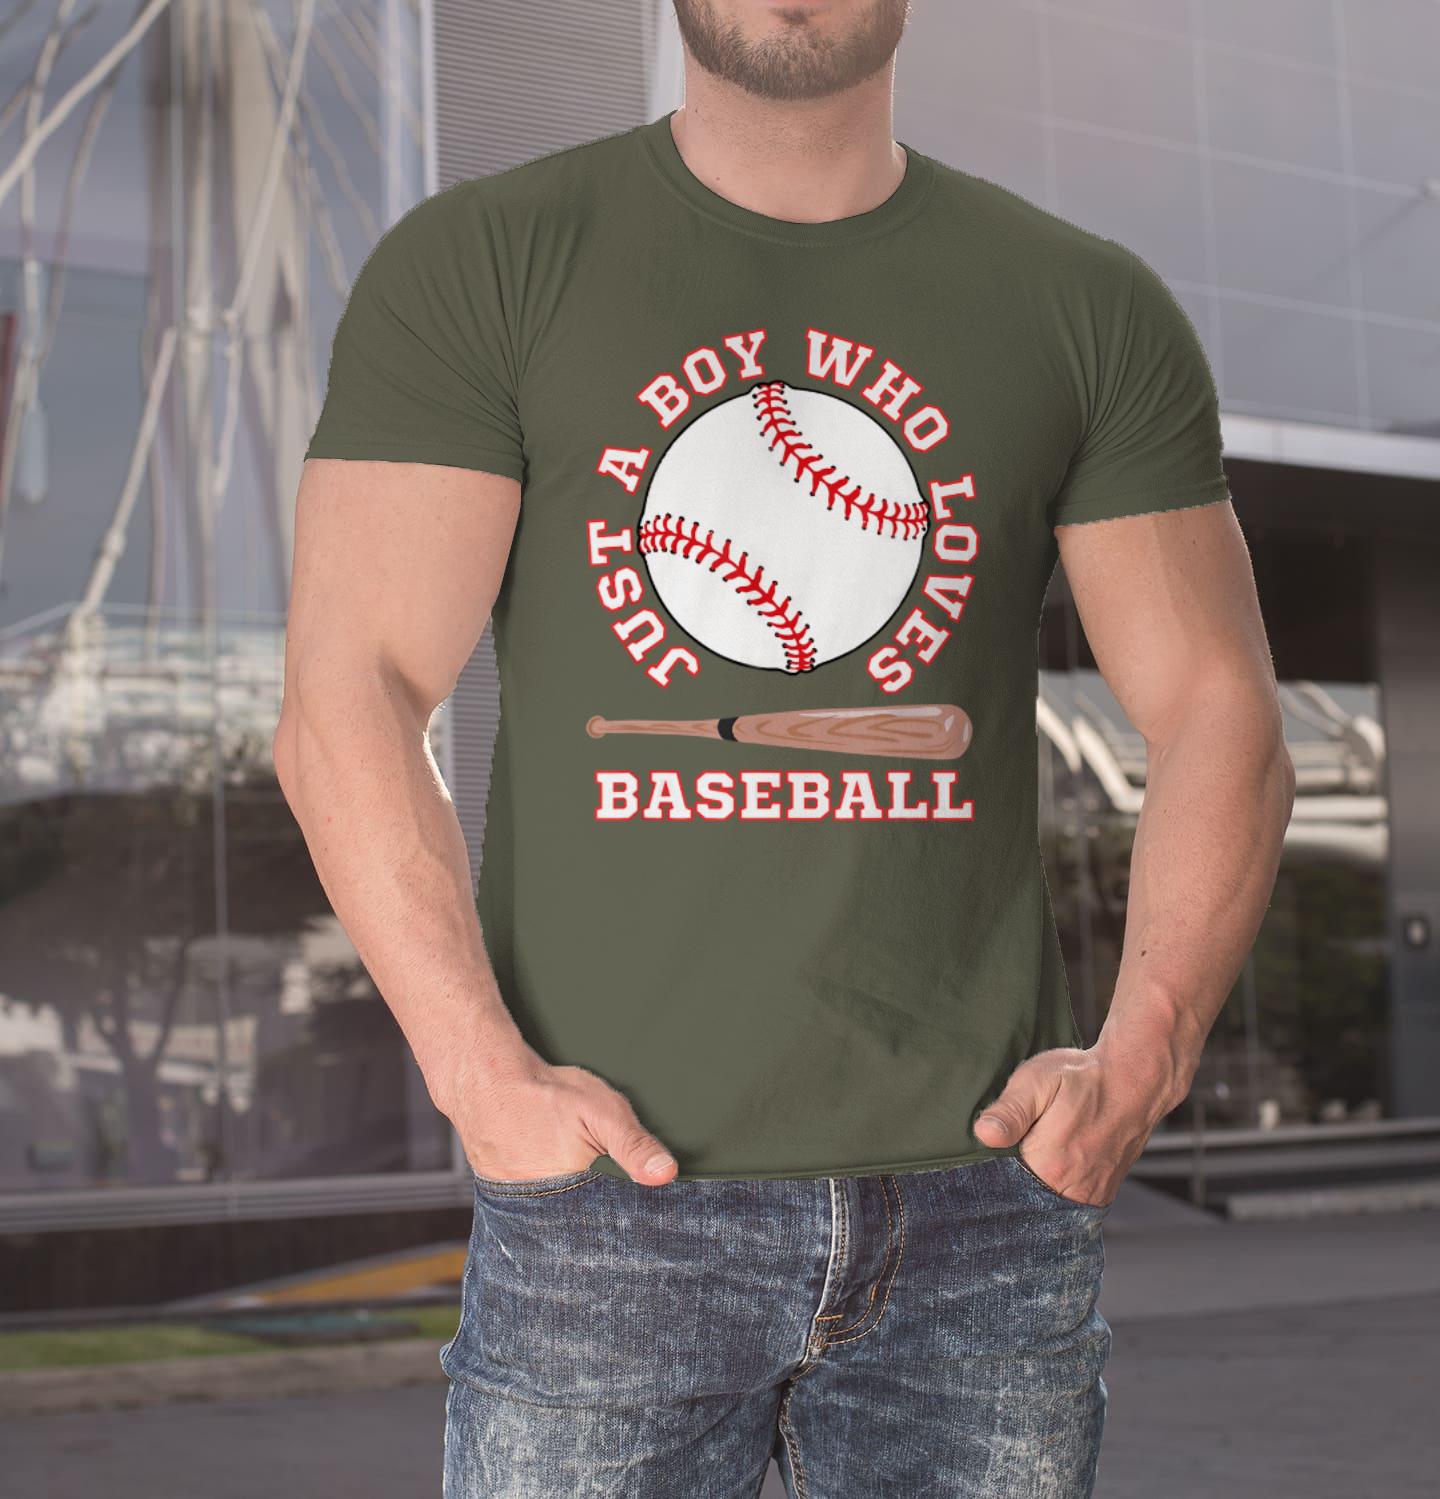 Customized Baseball T-shirts